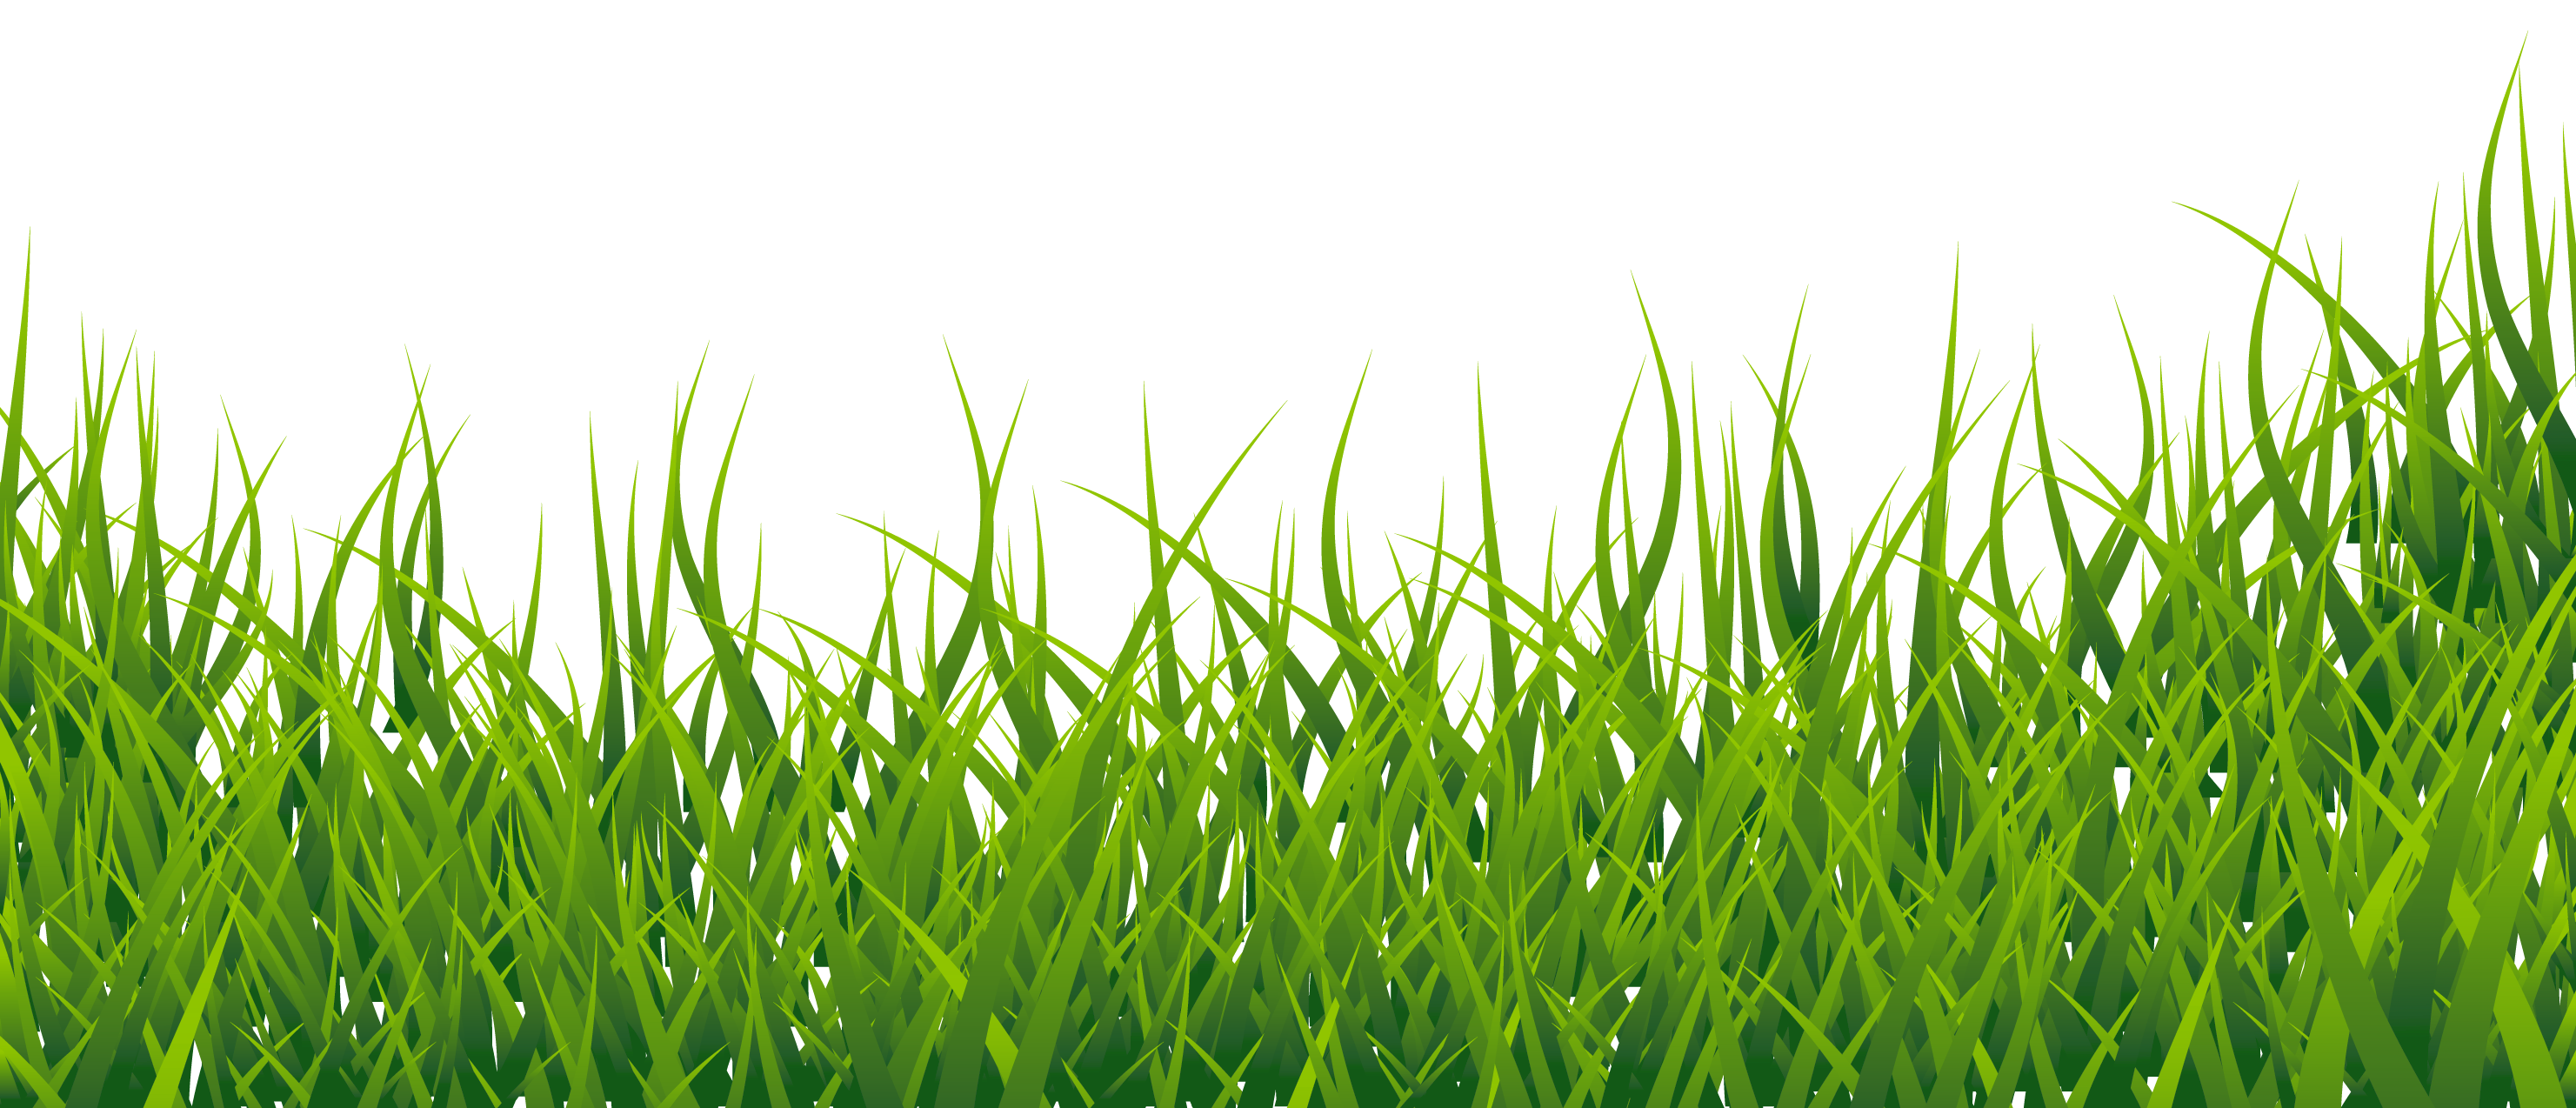 Pin Wallpaper Clipart Grass #8 - Grass, Transparent background PNG HD thumbnail